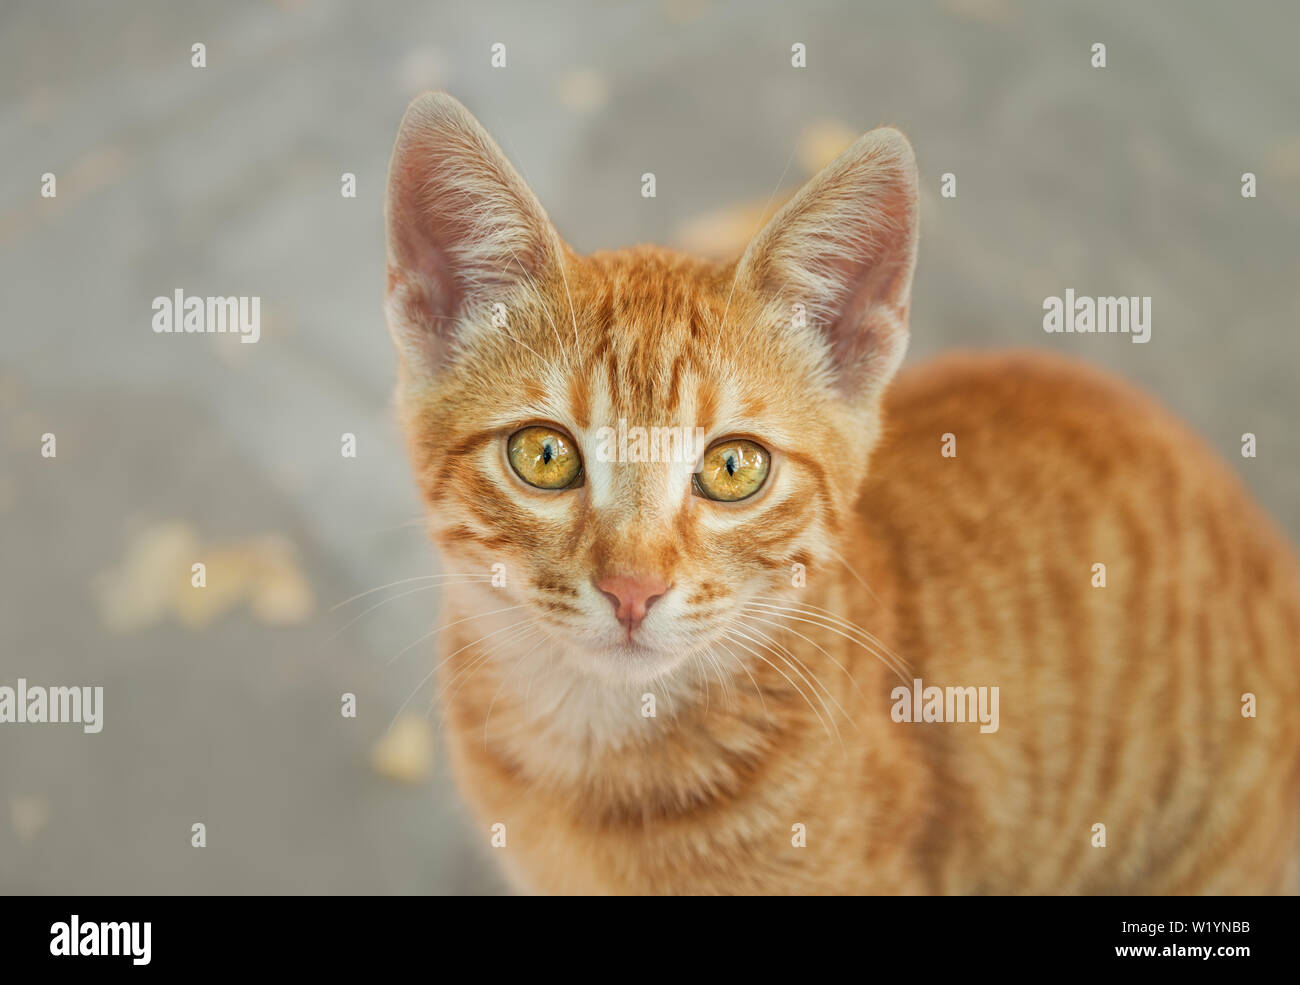 Lindo gatito gato atigrado rojo joven mirando con ojos de color naranja oro maravilloso y mirando de arriba abajo, curiosamente, retrato, Grecia Foto de stock